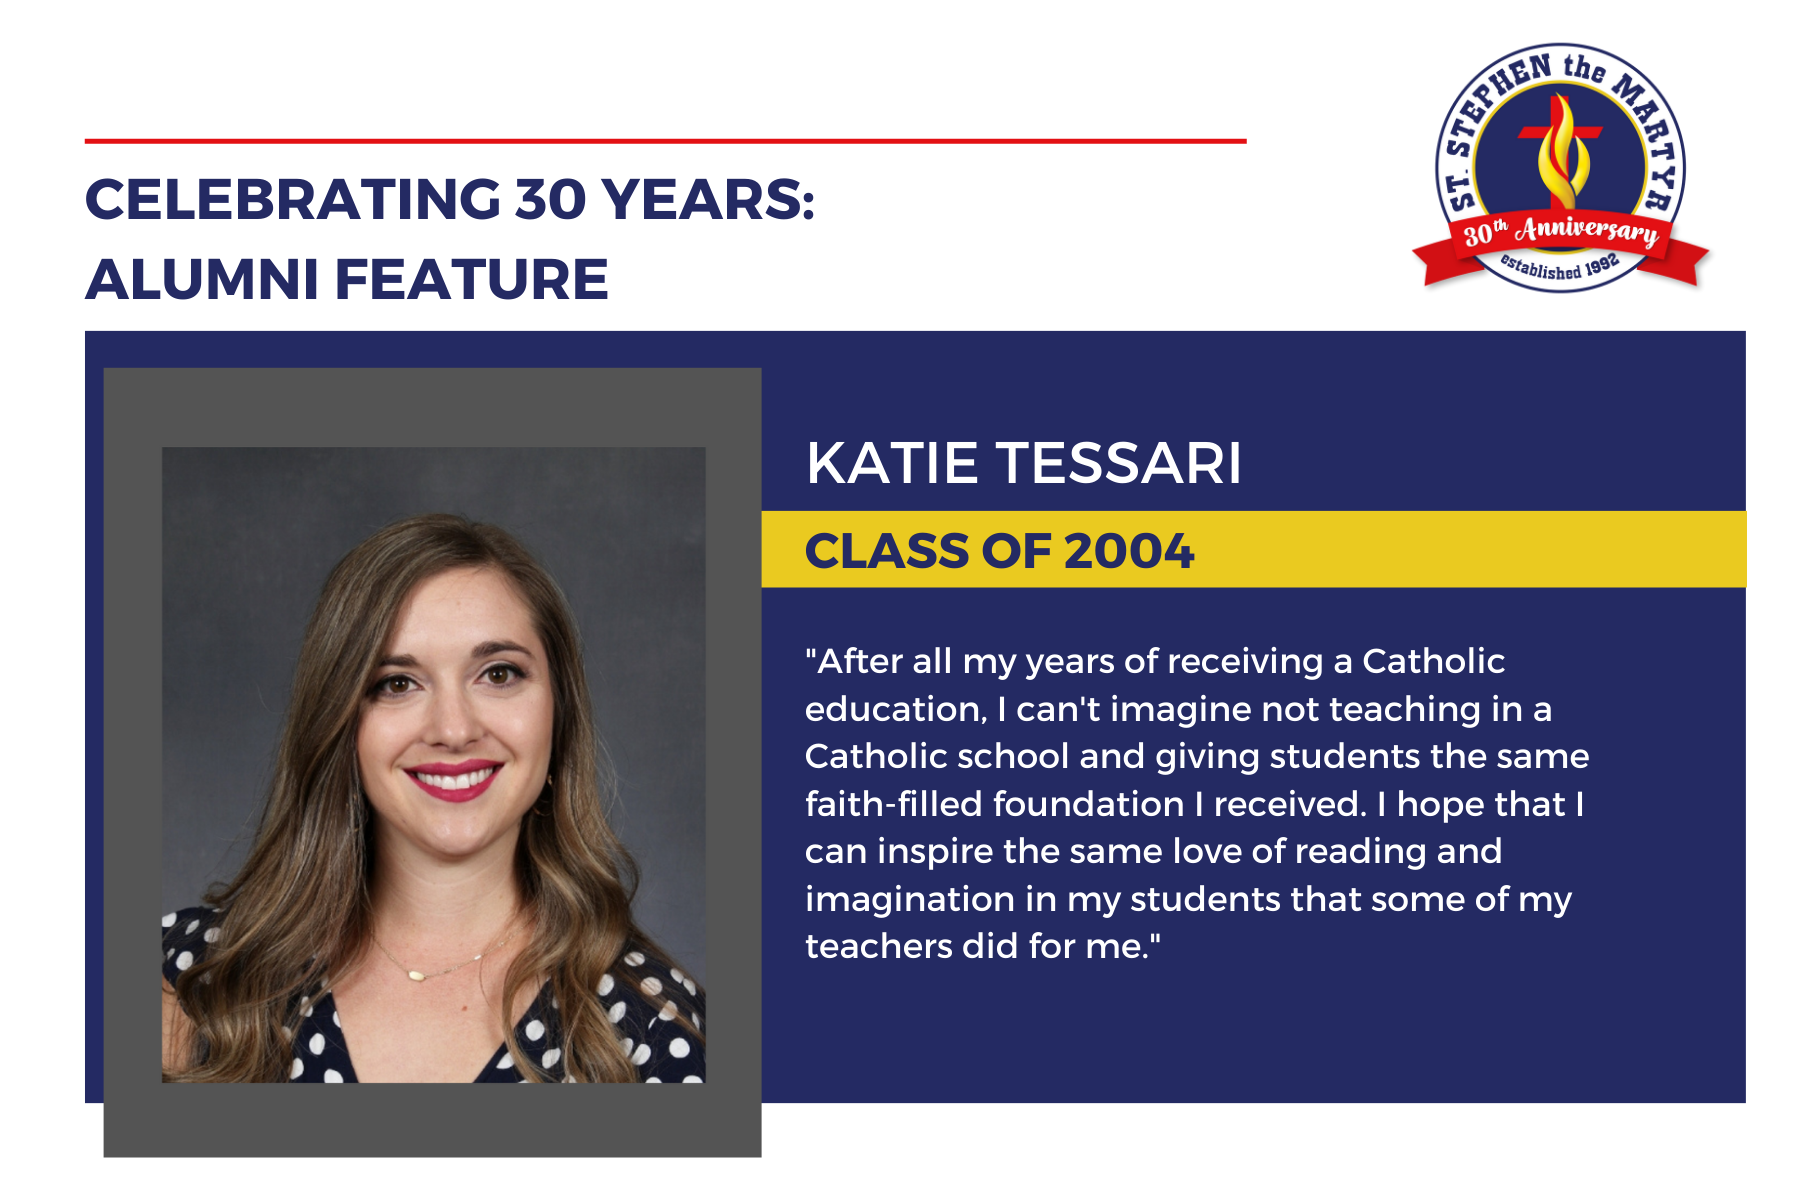 Alumni Feature: Katie Tessari, Class of 2004